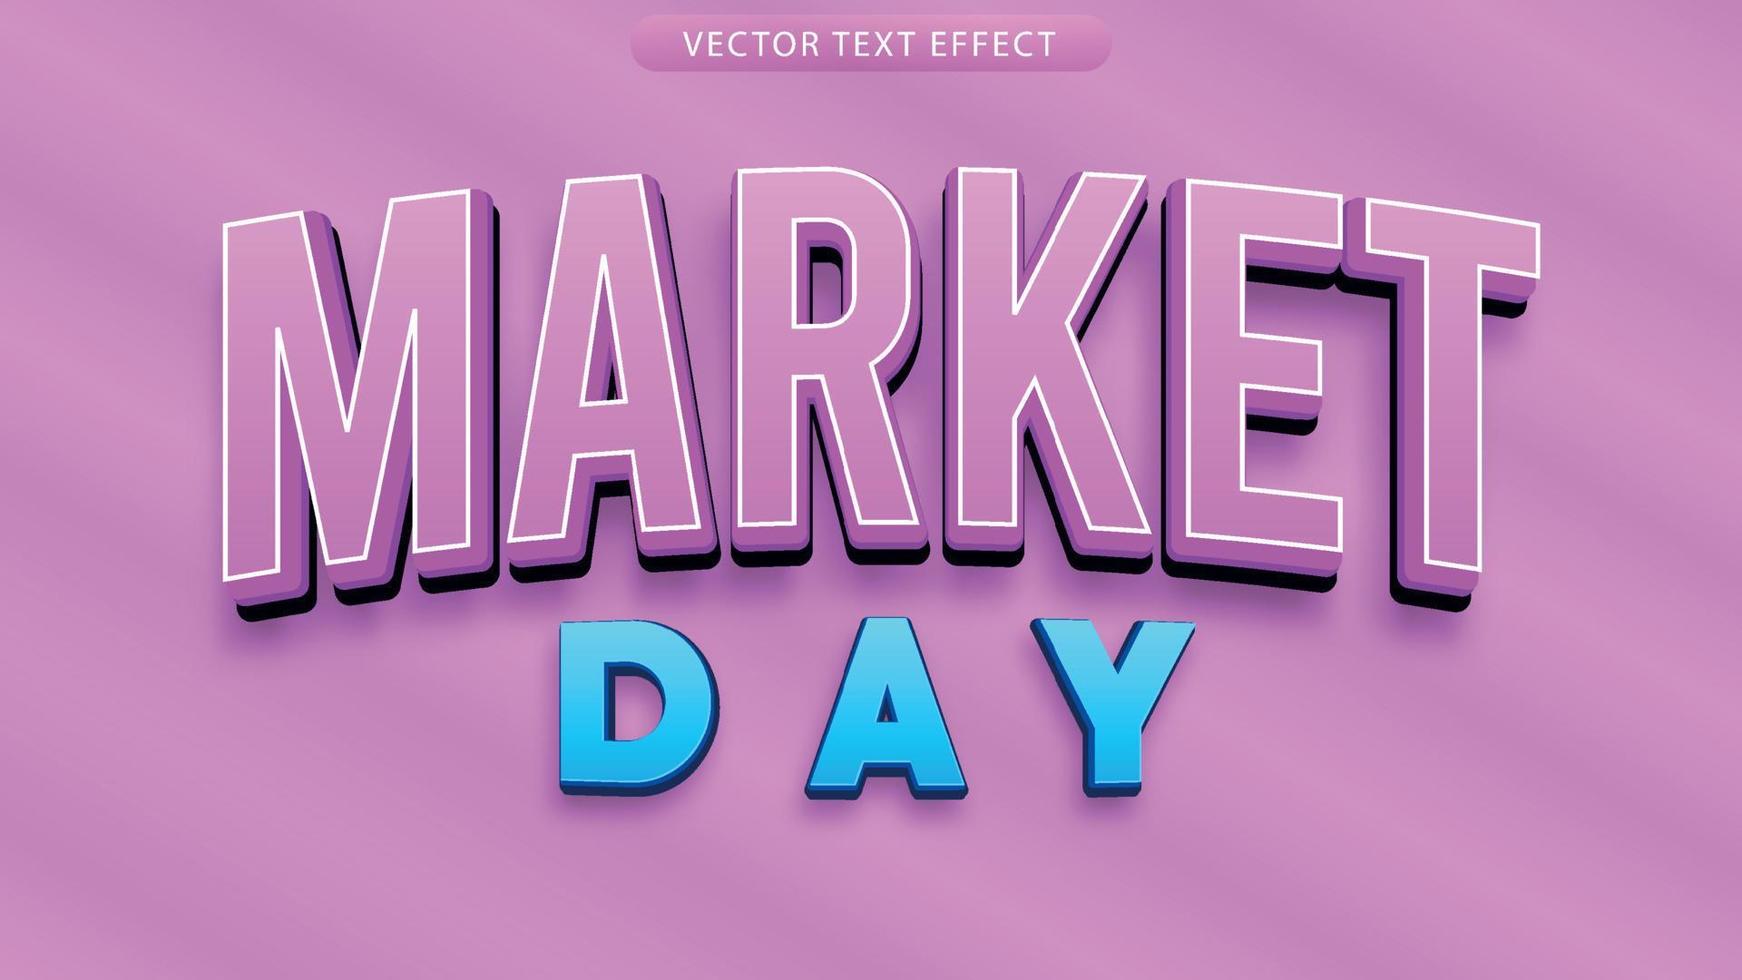 fichier vectoriel de jour de marché texte 3d